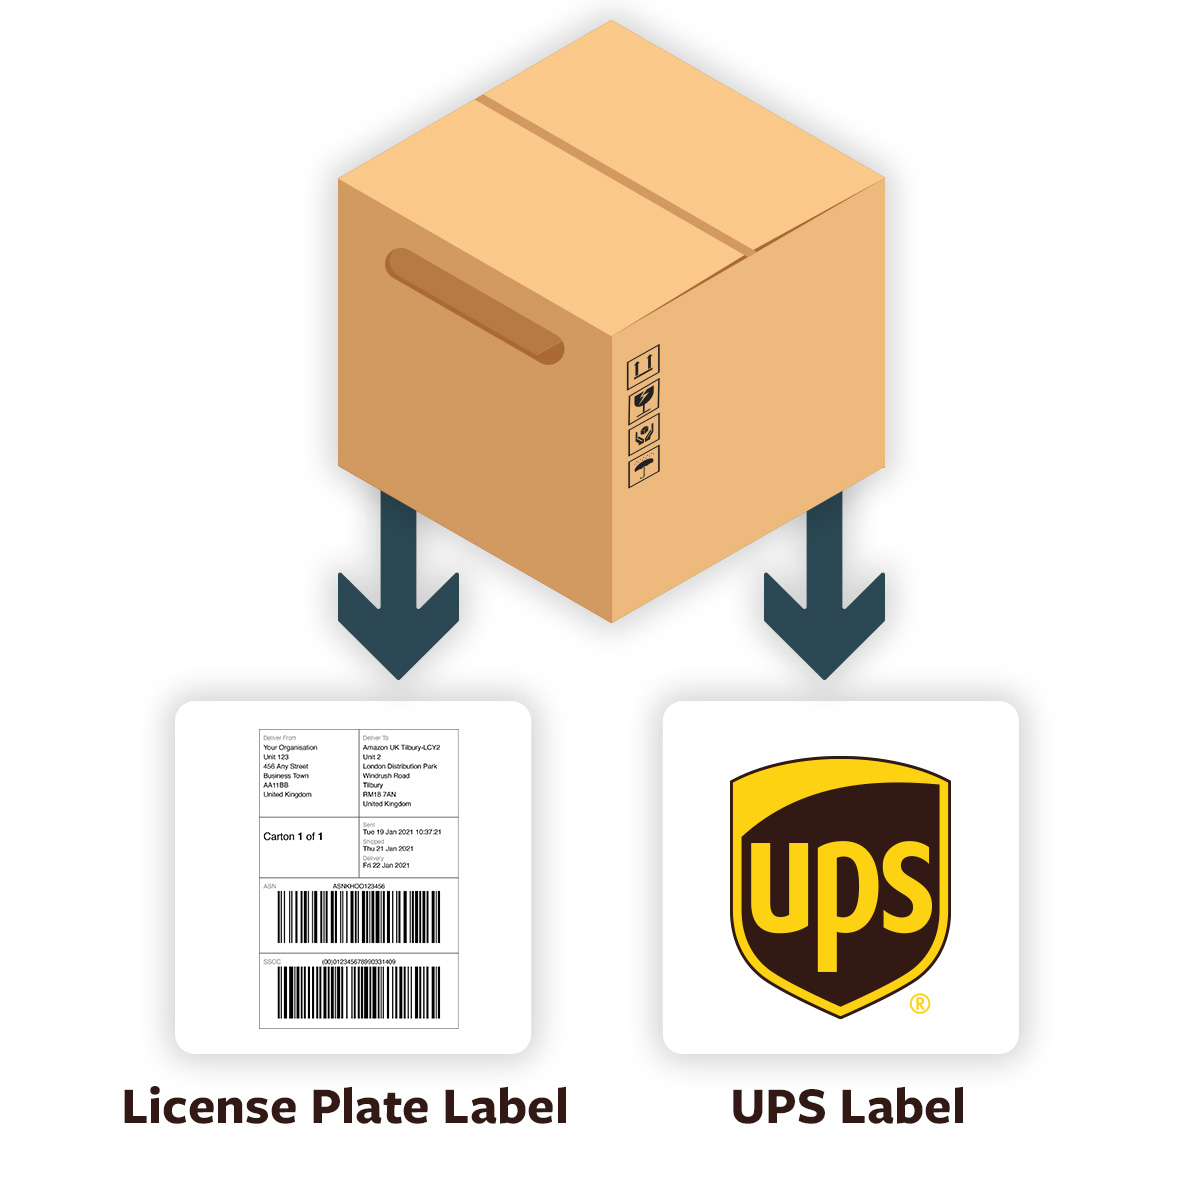 Khoocommerce has UPS integration